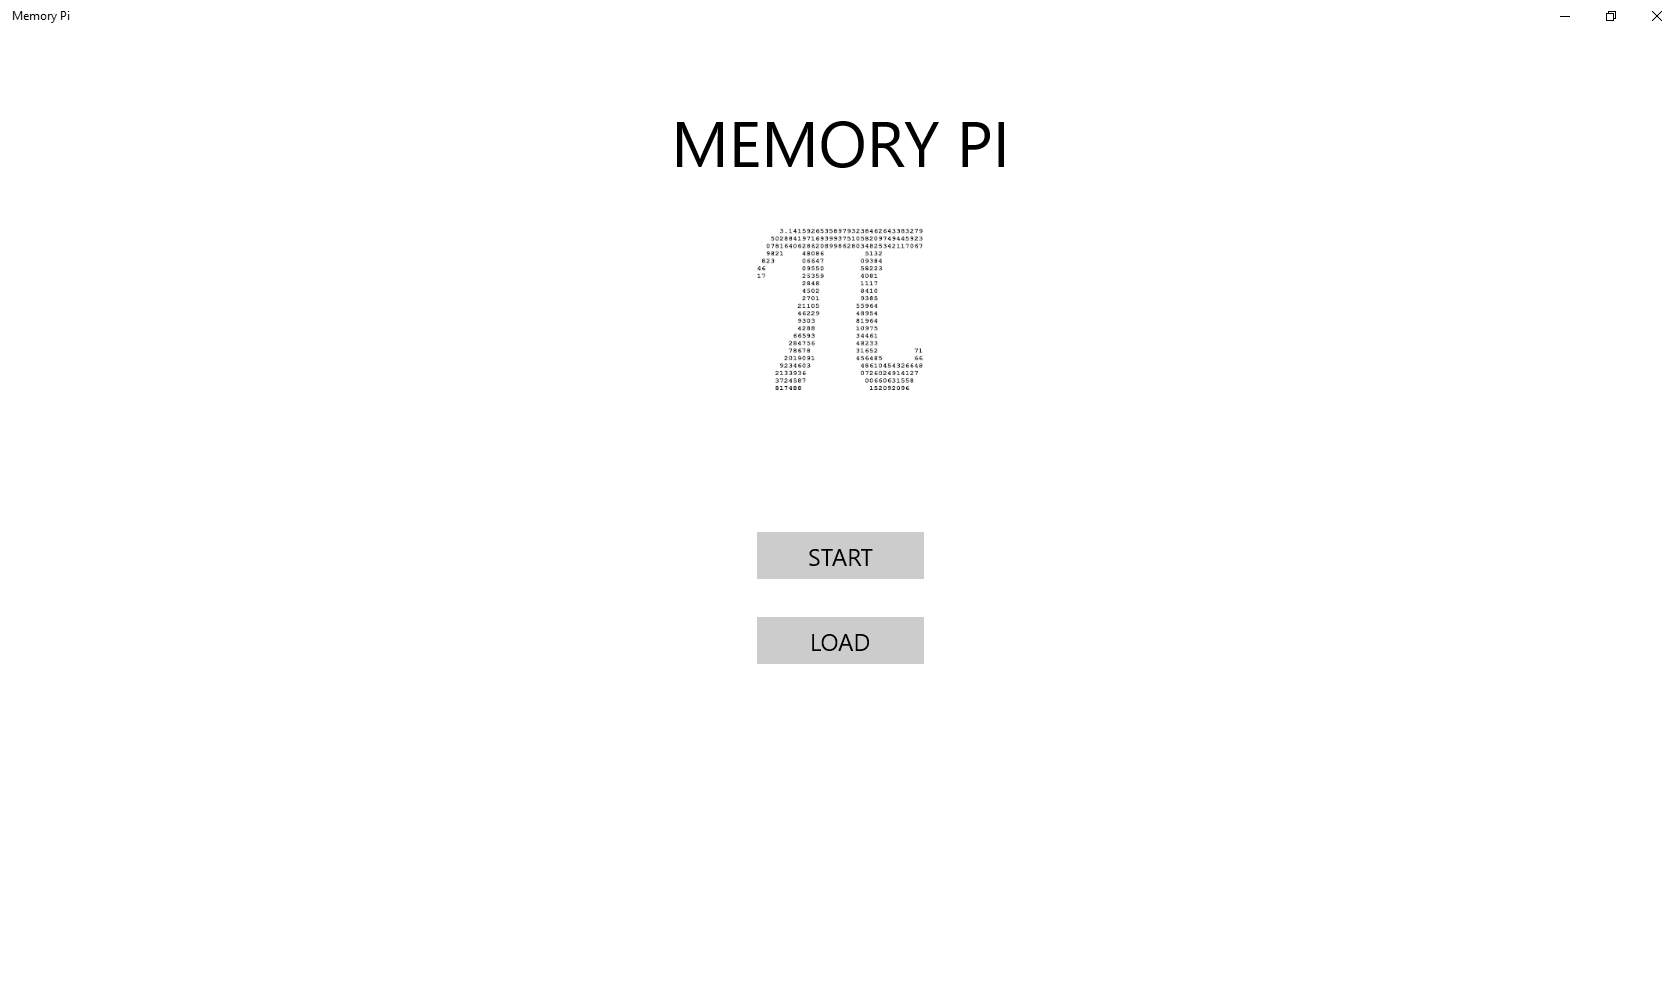 Memory Pi